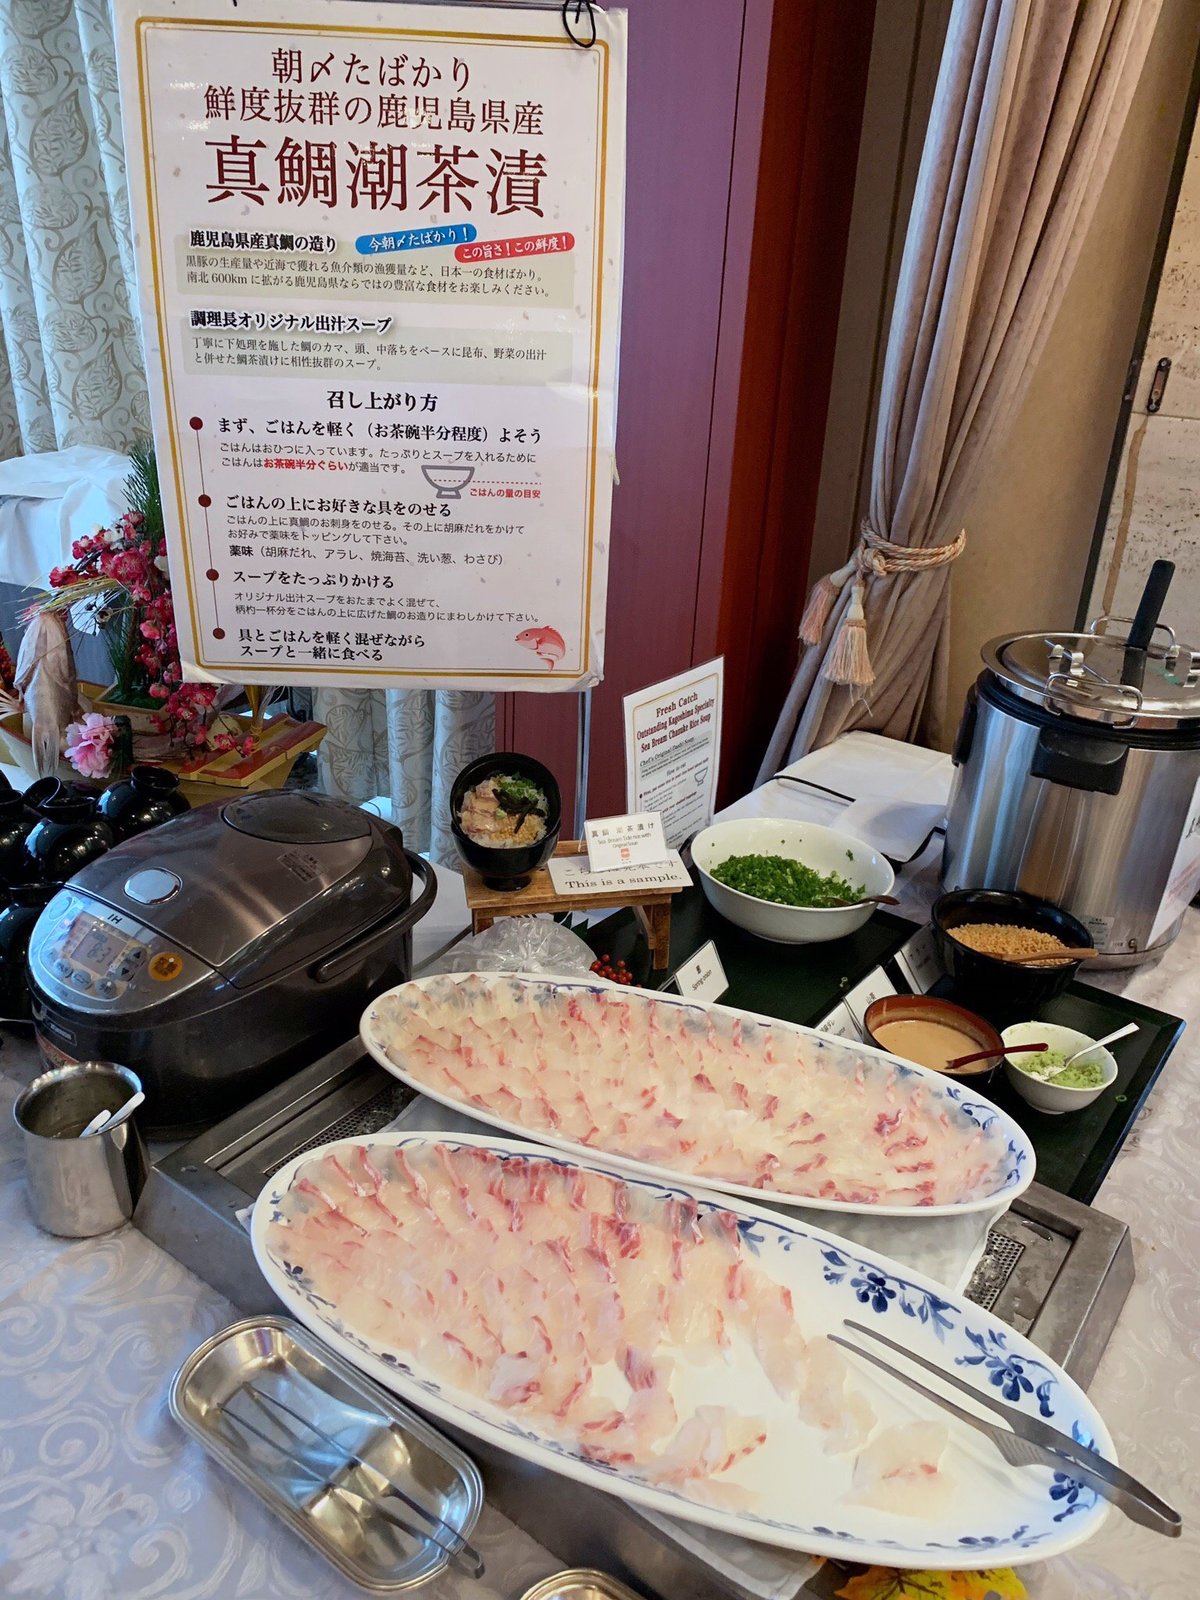 絶品ビュッフェも コスパ最高な日本全国 ホテル朝食 ランキング Trip Editor